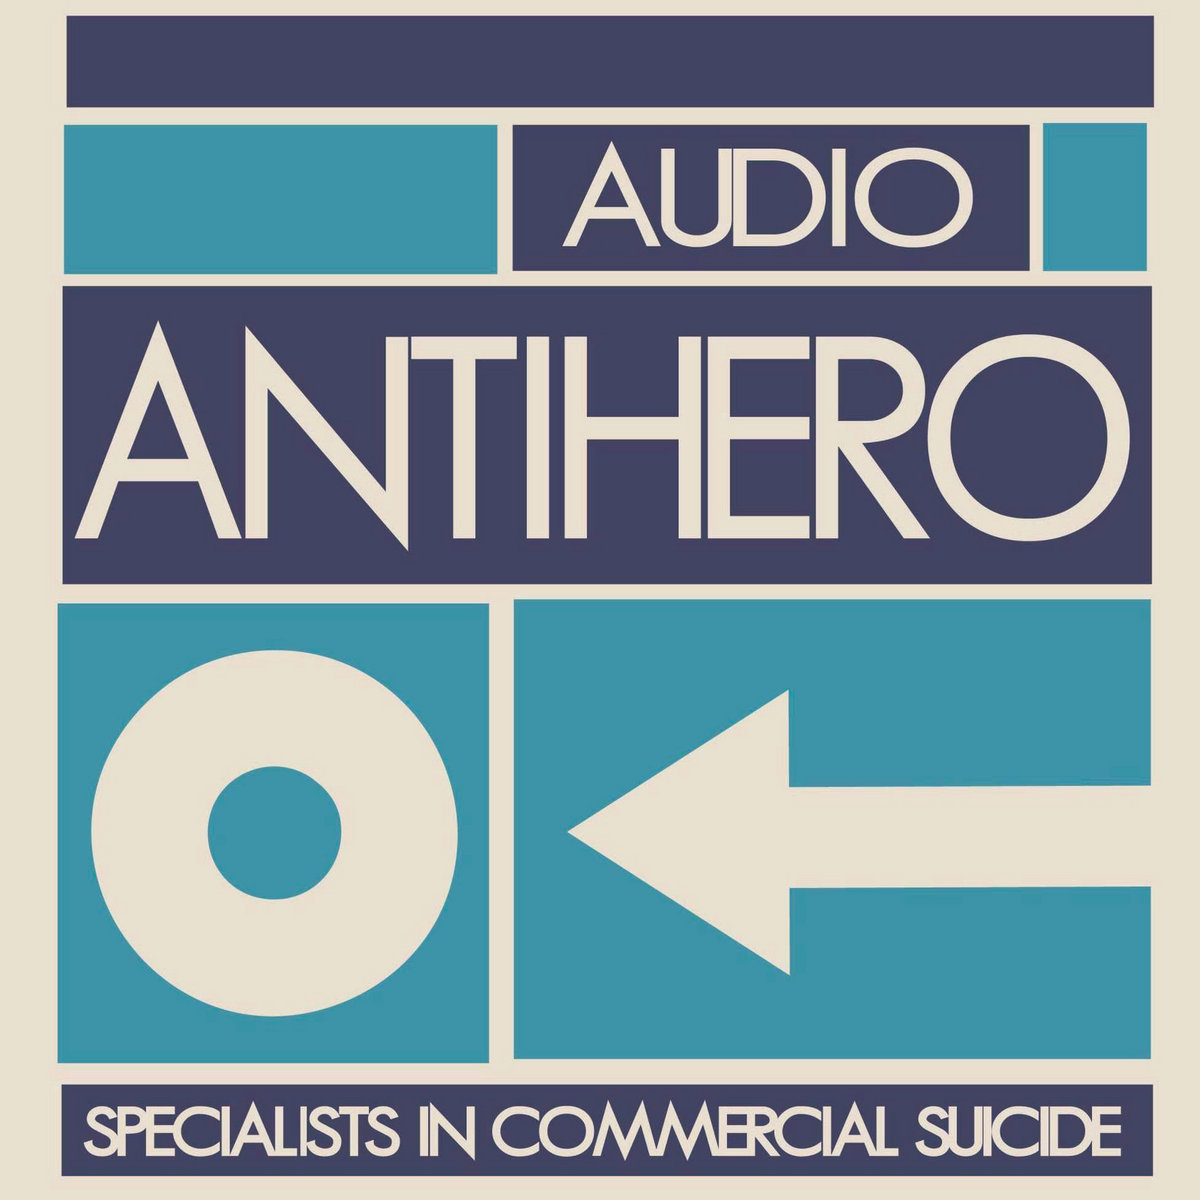 Introducing labels: Audio Antihero